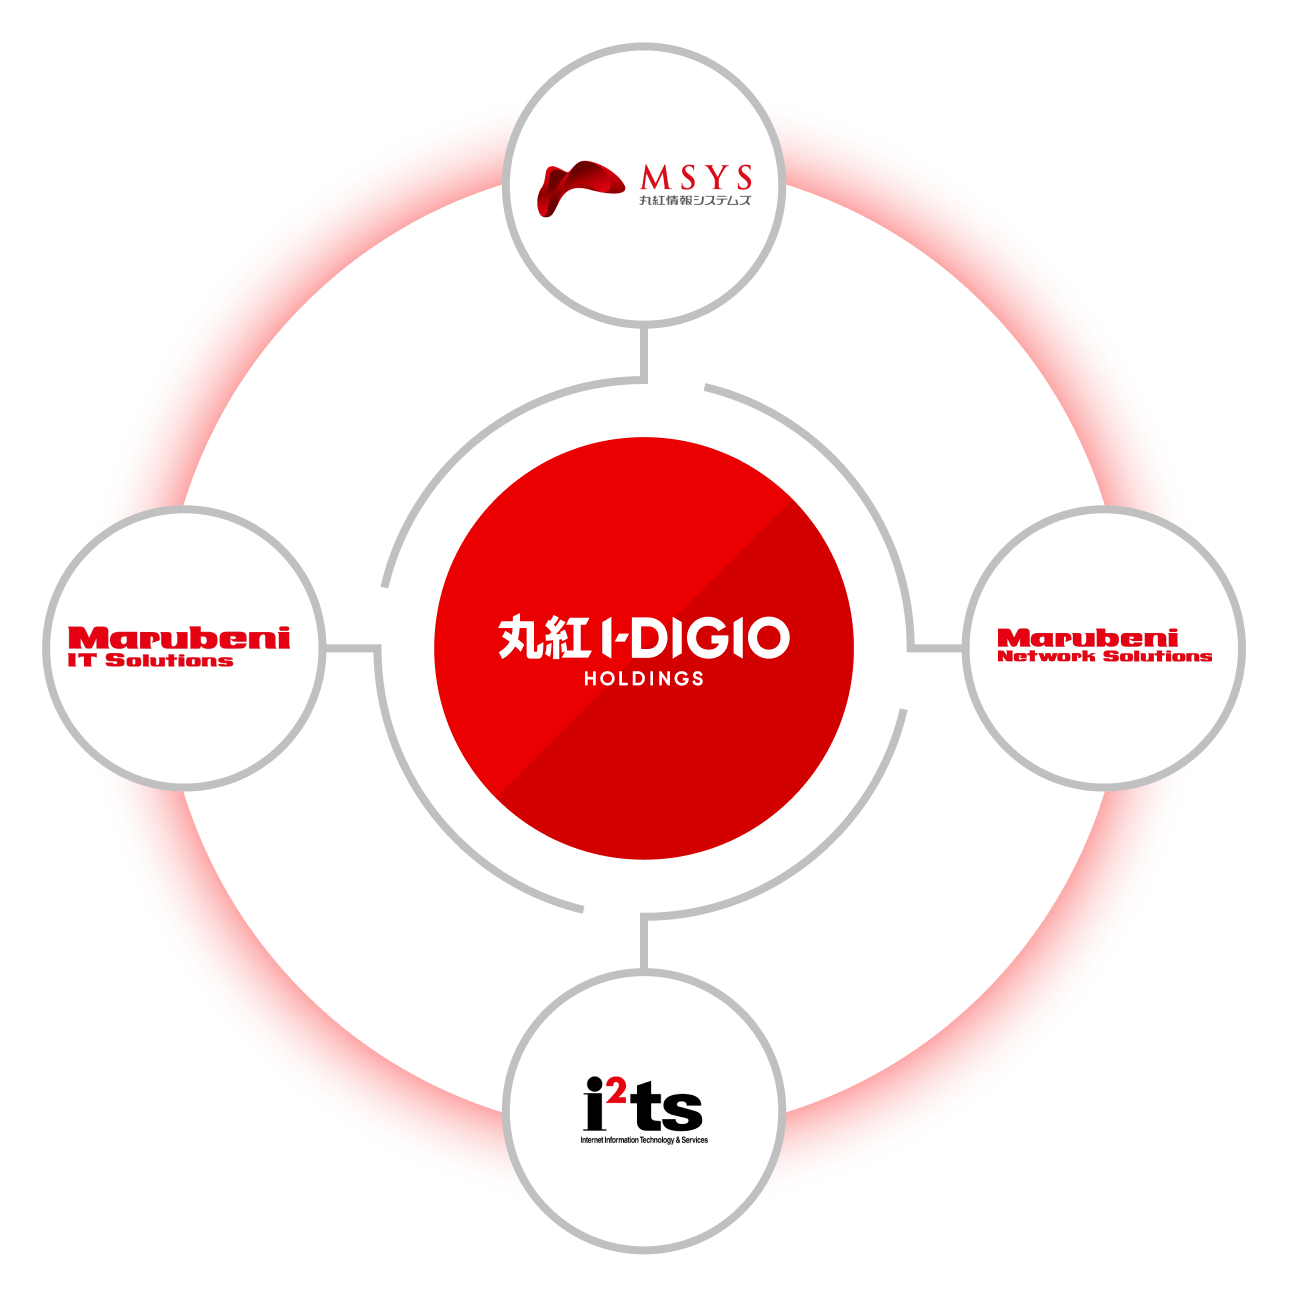 丸紅I-DIGIO HOLDINGS - MSYS 丸紅情報システムズ - 丸紅ITソリューションズ | 丸紅ネットワークソリューションズ | イーツ